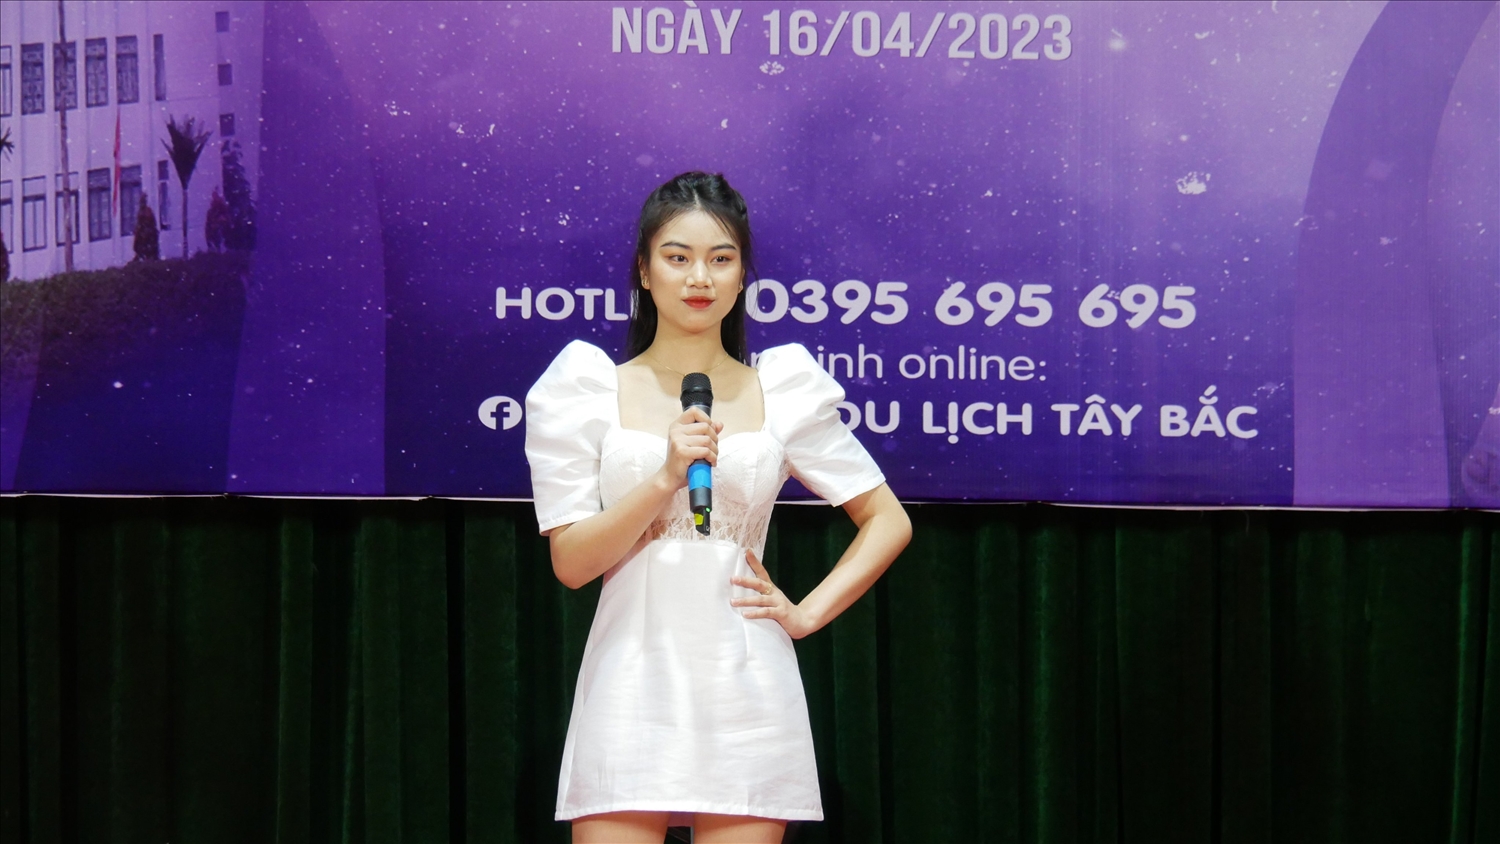 TIn chuyên đề: Sinh viên trường Cao đẳng Lào Cai tham gia sơ khảo cuộc thi “Hoa khôi du lịch Tây Bắc-Sa Pa 2023” 3